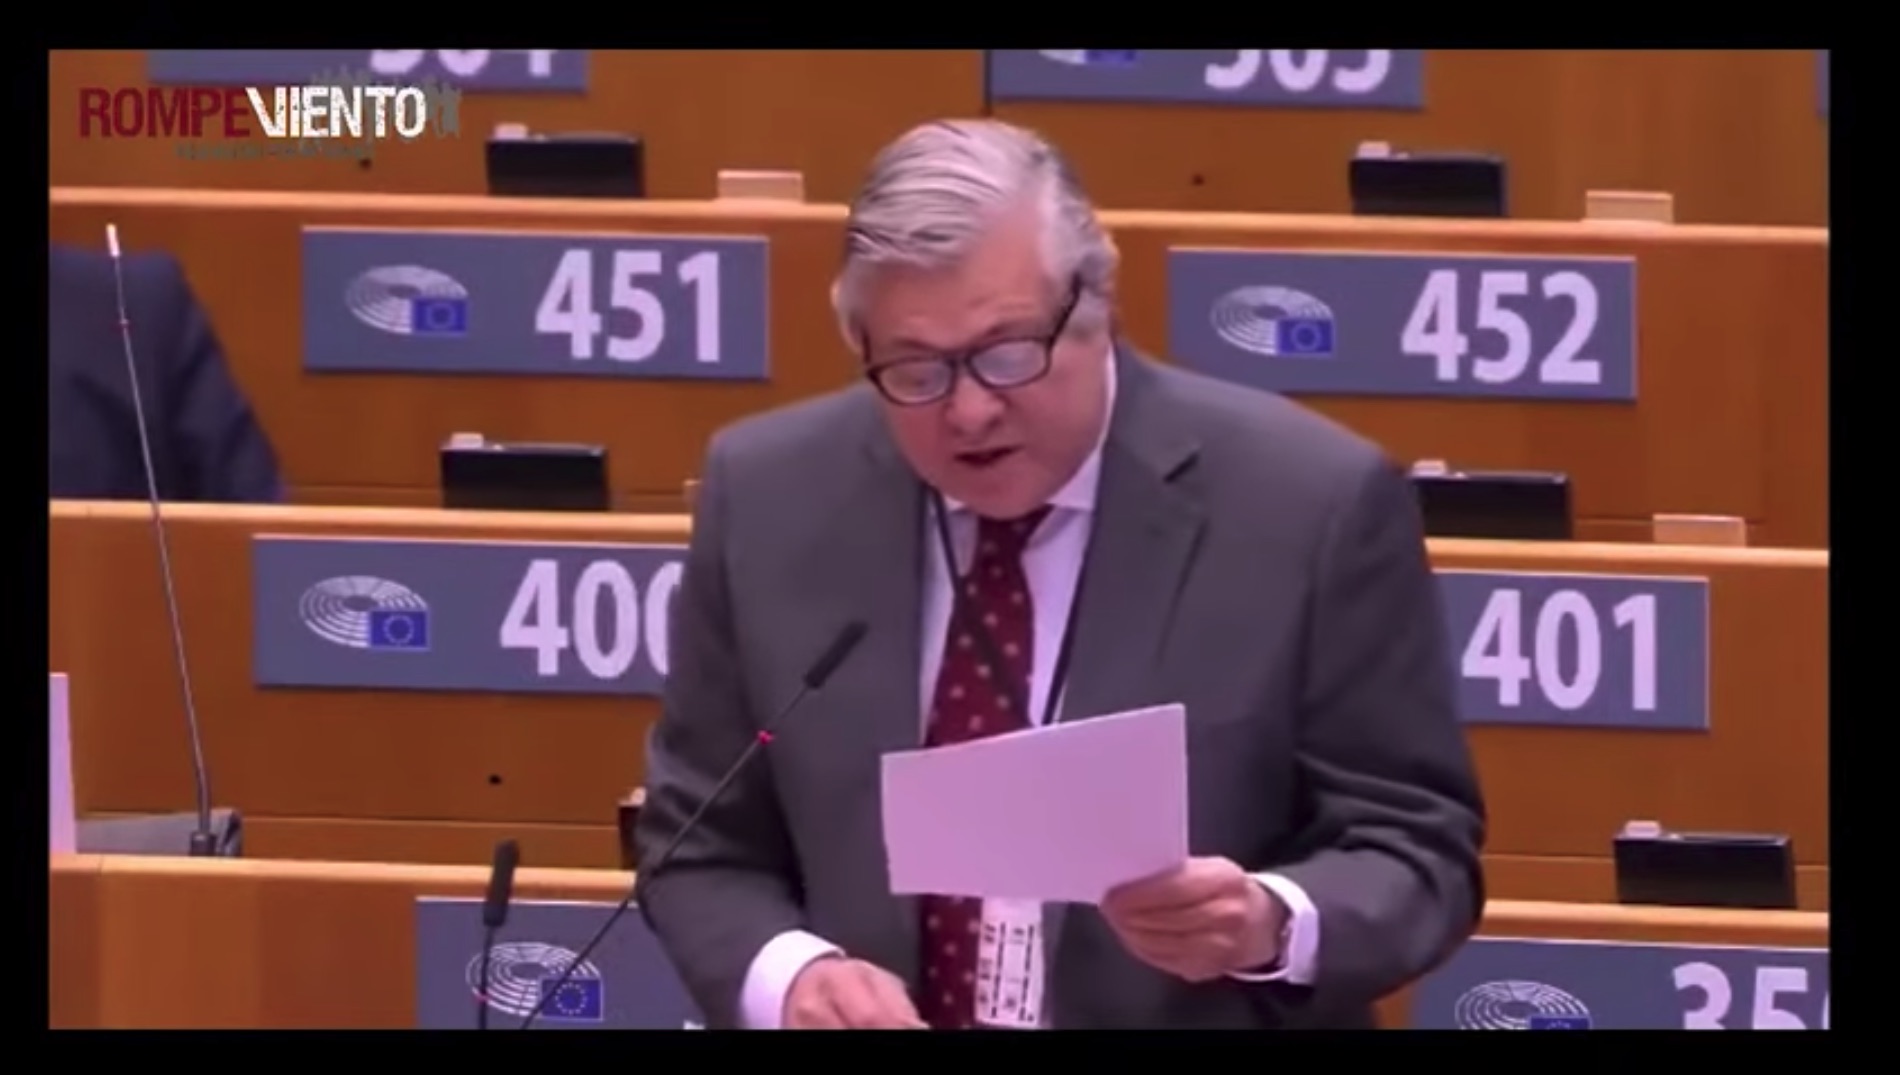 Eurodiputados: ¿Con periodistas o intereses comerciales? ❘ Mirada Crítica